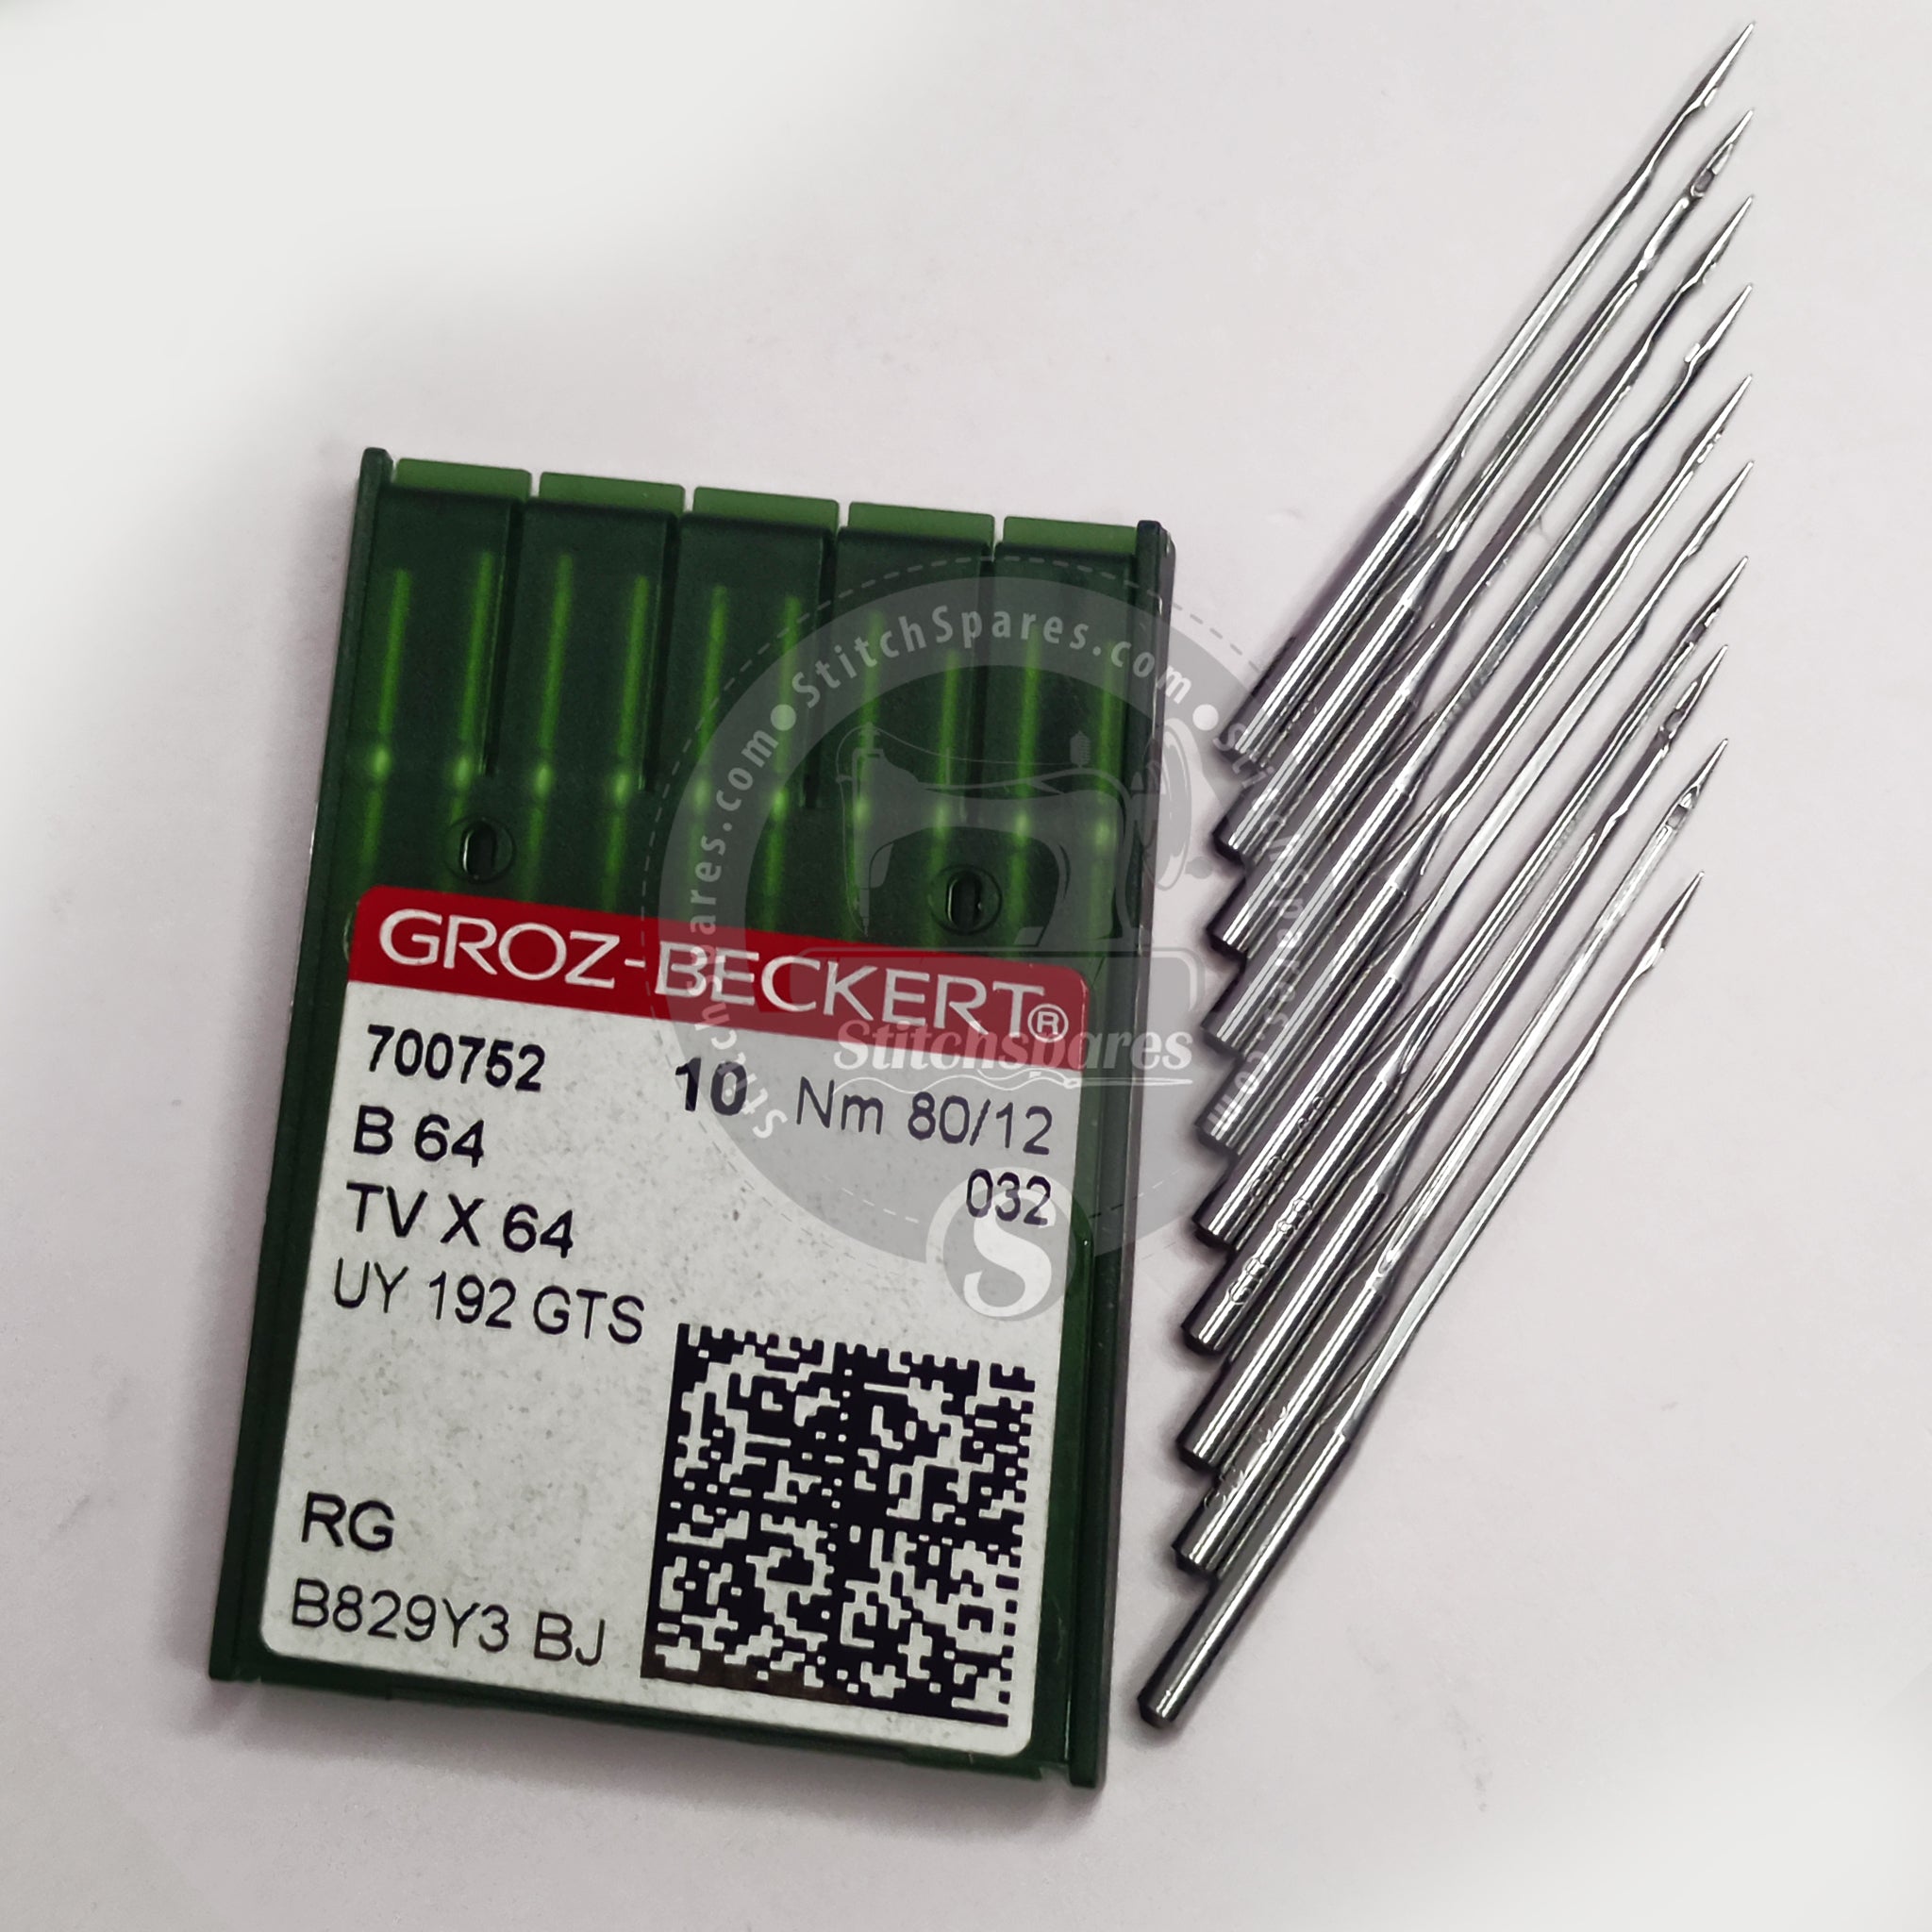 #700752 TVX64 /UY 192 GTS Nm 80/12 Aguja para máquina de coser Groz Beckert